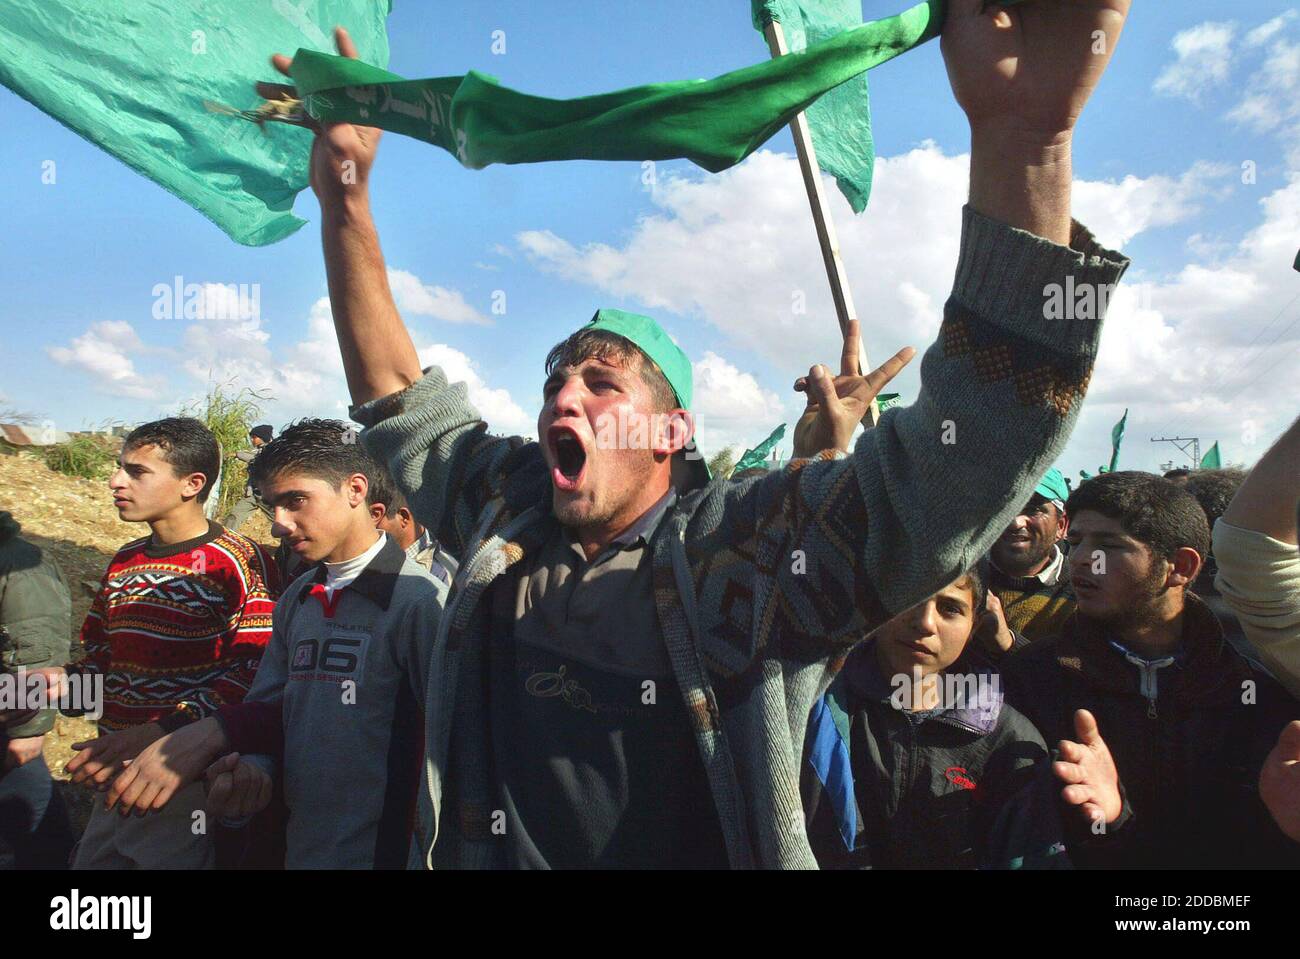 NO FILM, NO VIDEO, NO TV, NO DOCUMENTARIO - i sostenitori del movimento di resistenza islamica Hamas celebrano la vittoria elettorale di Hamas a Beit Lahia, striscia di Gaza, venerdì 27 gennaio 2006. Foto di Ahmad Khateib/Flash 90/KRT/ABACAPRESS.COM Foto Stock